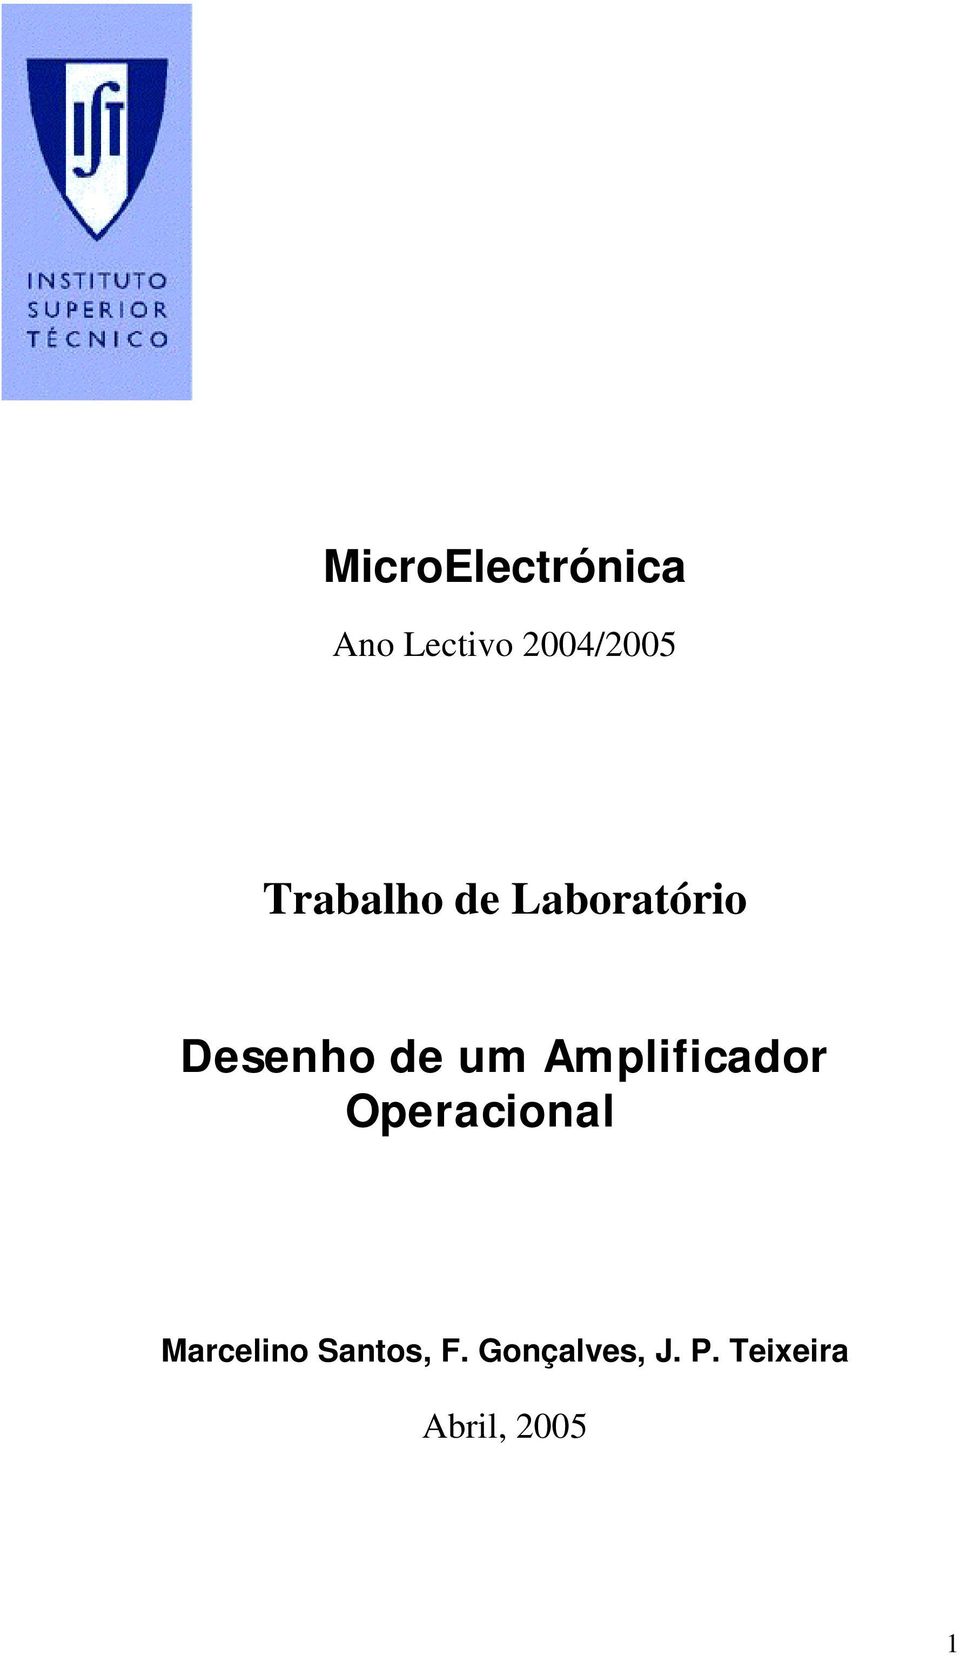 Amplificador Operacional Marcelino